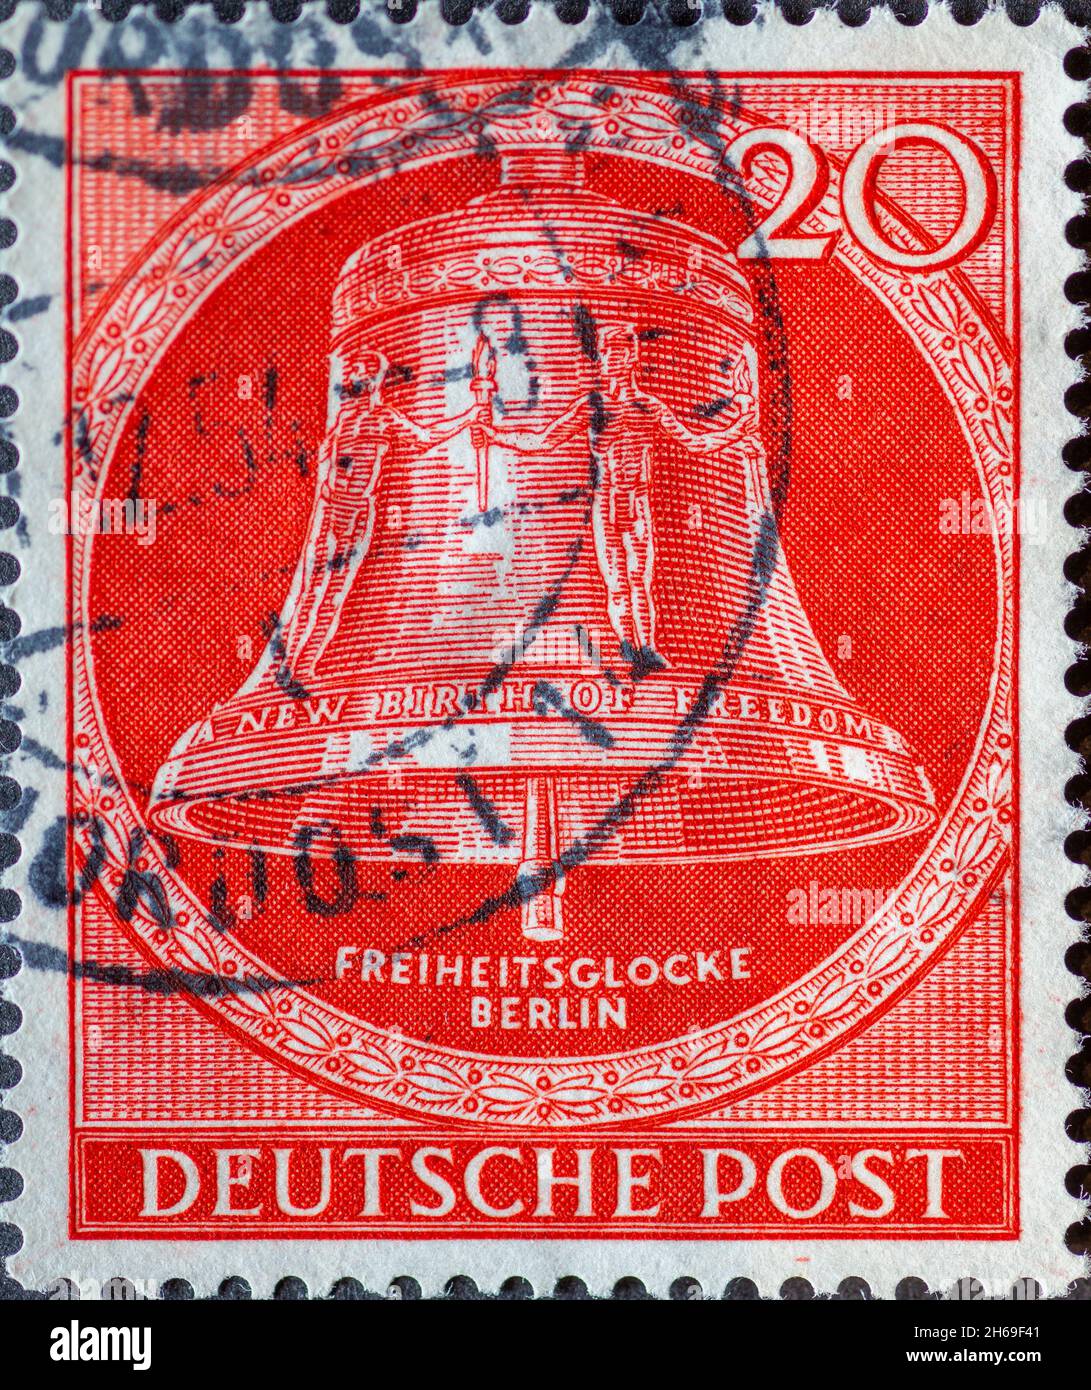 GERMANIA, Berlino - CIRCA 1953: Un francobollo dalla Germania, Berlino mostrando la campana della libertà con il testo: Nuova nascita della libertà. Clapper al centro Foto Stock